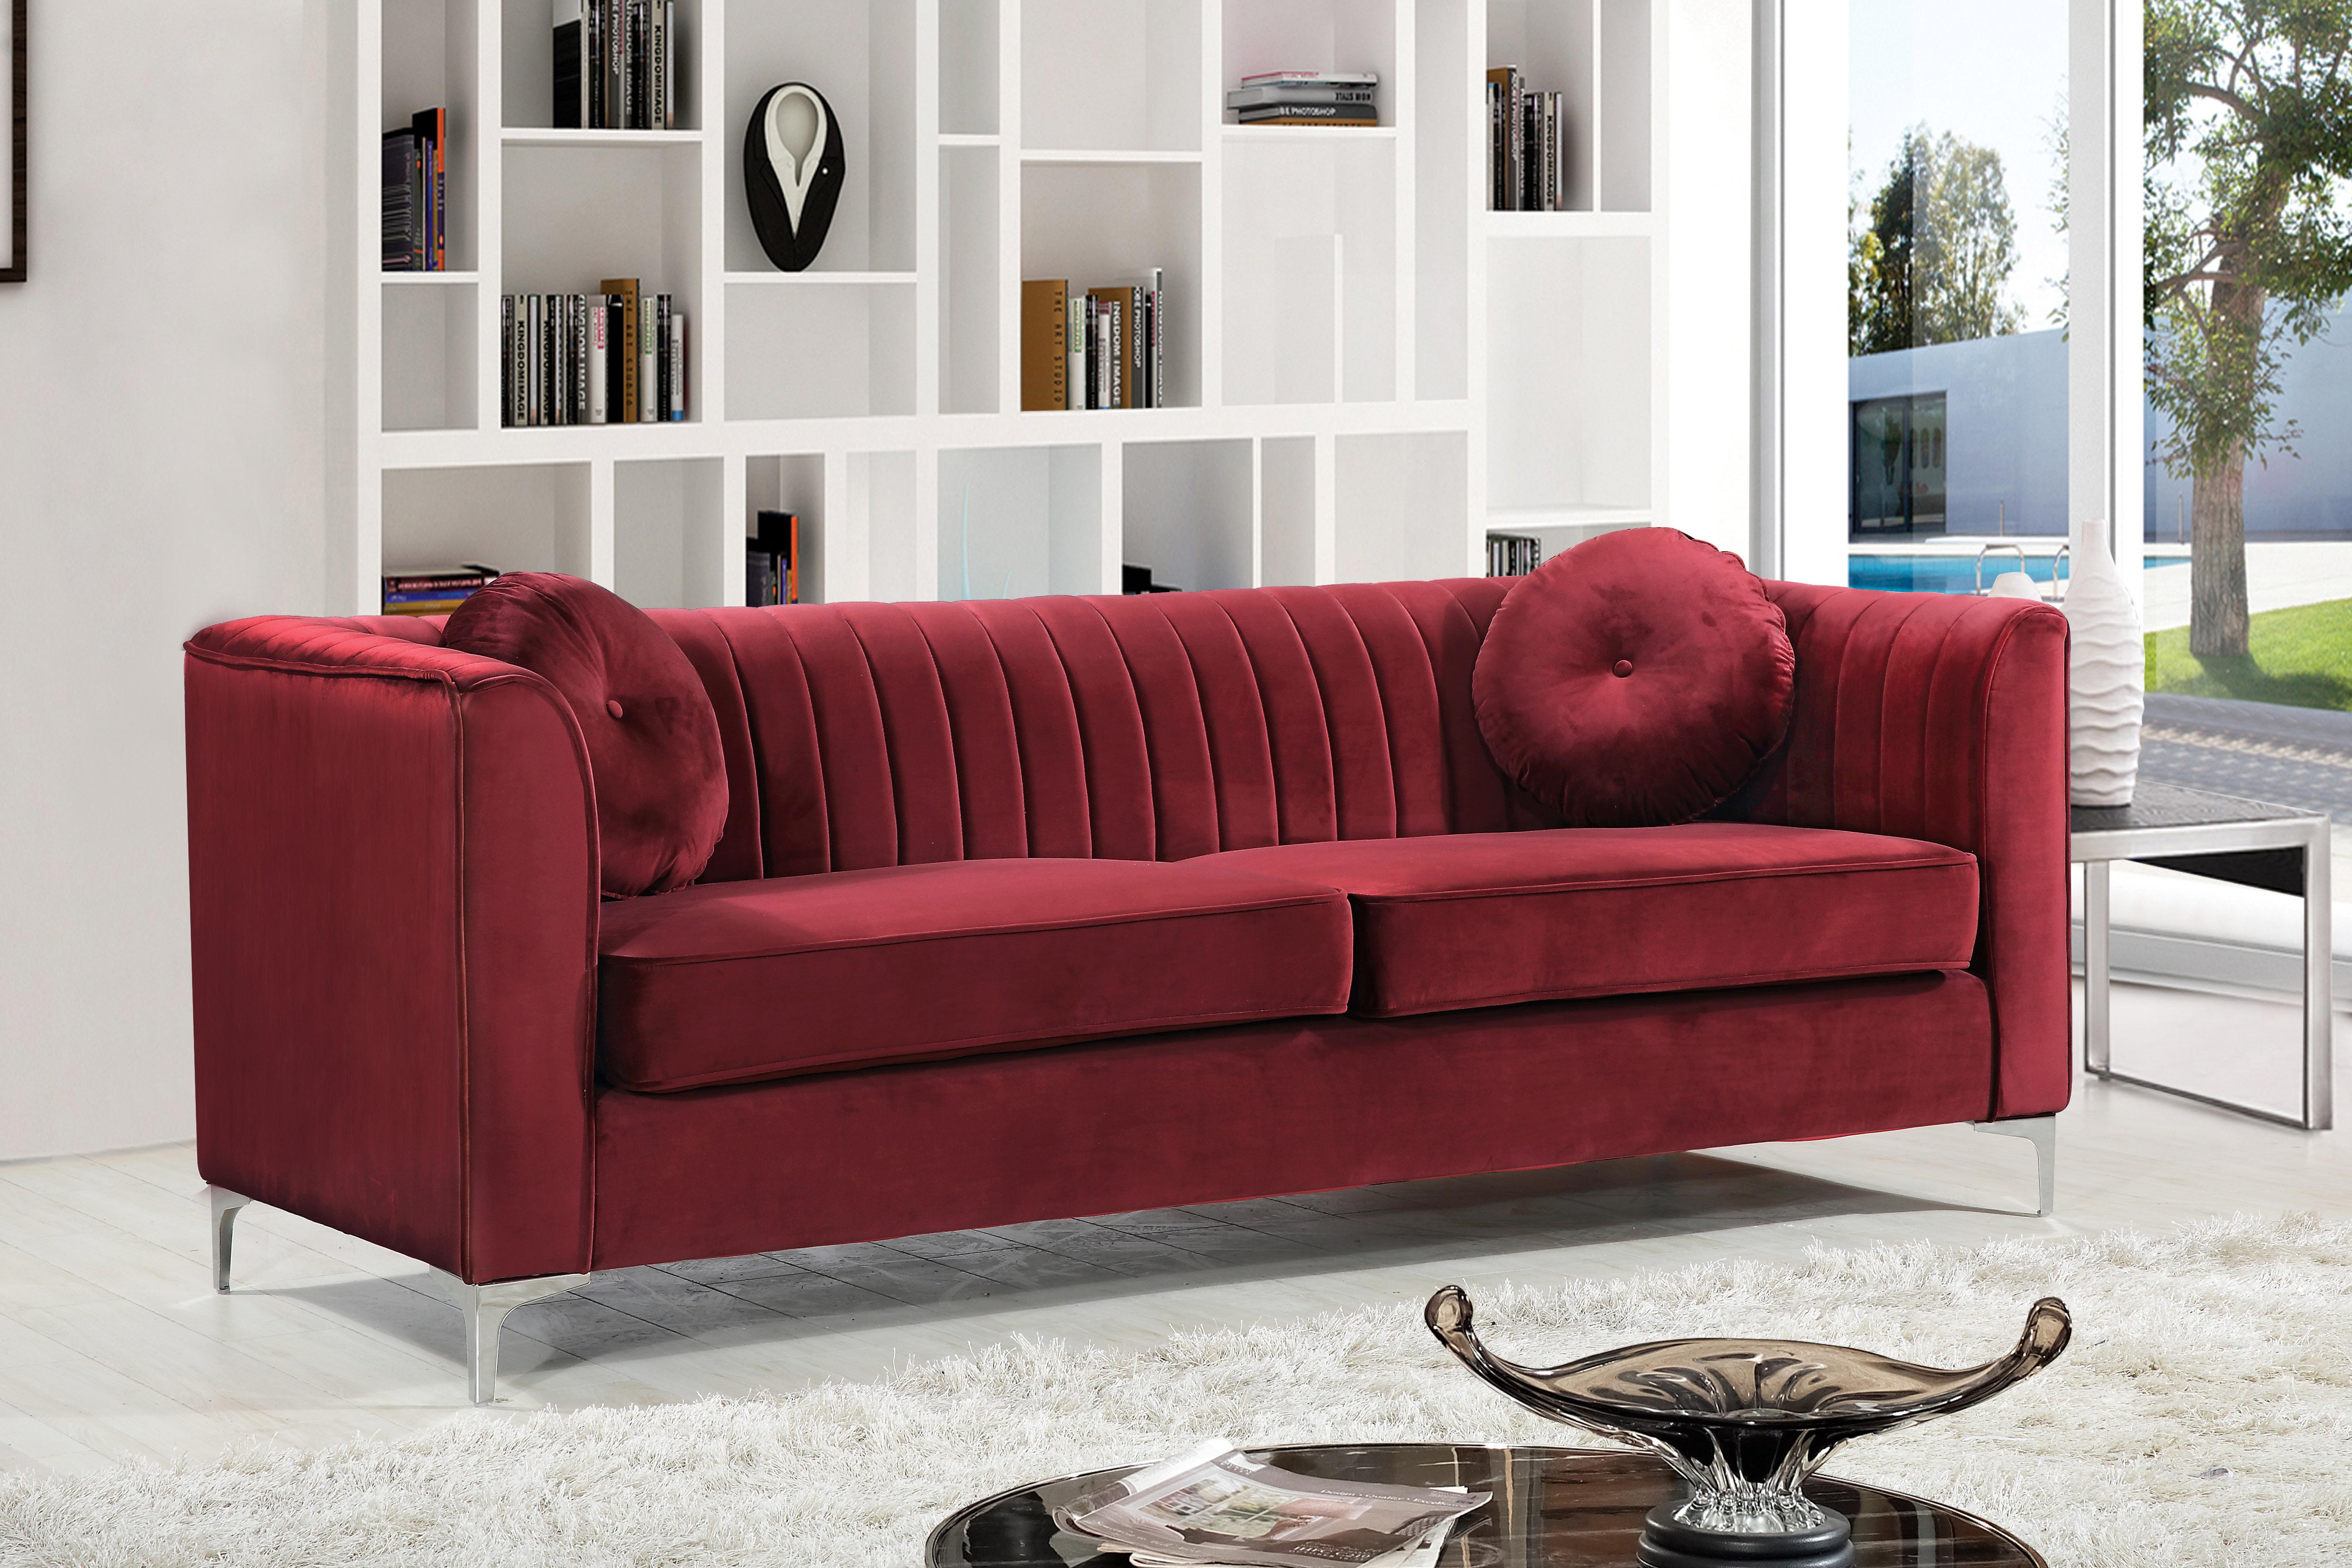 

    
612Burg-S-Set-3 Burgundy Velvet Sofa Set 3Pcs Isabelle 612Burg-S Meridian Contemporary Modern
